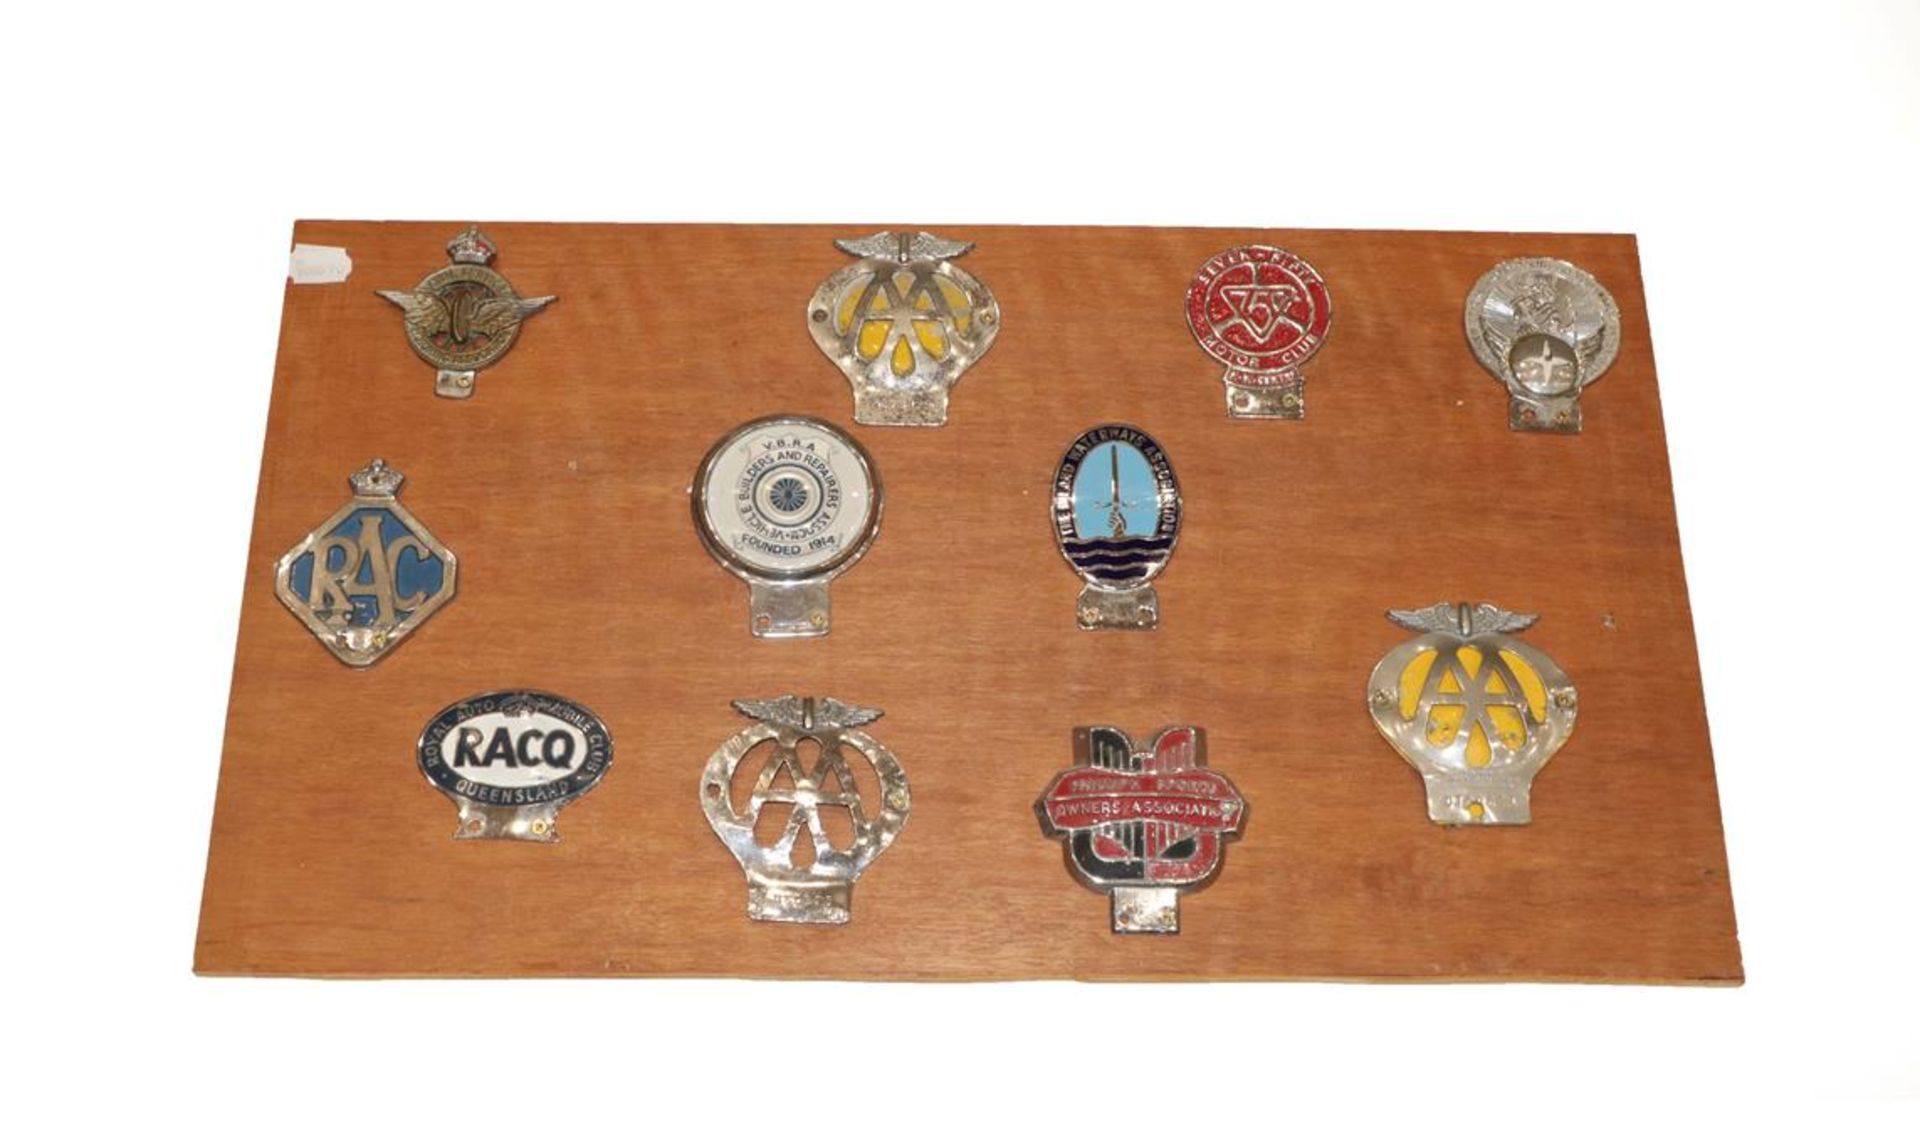 Ten Car Badges, including RAC, Queensland Australia, The Inland Waterways Association, 7-50 Motor